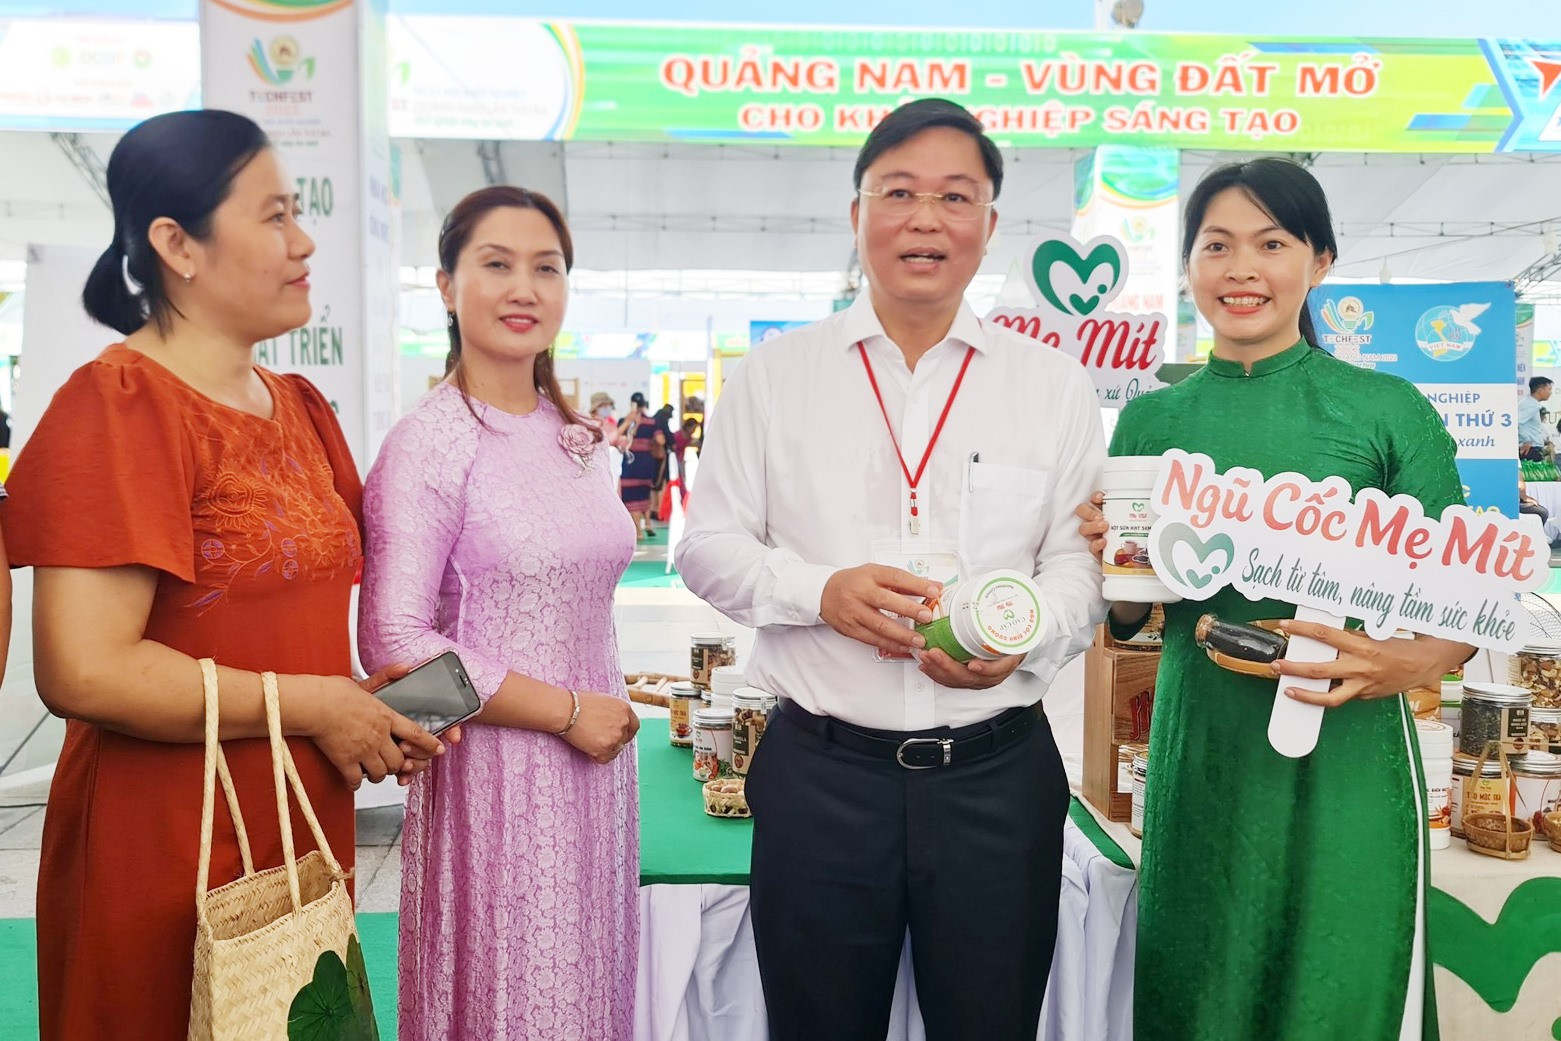 Chủ tịch UBND tỉnh Lê Trí Thanh cùng chủ thể khởi nghiệp Thái Thị Nhị (áo xanh). Ảnh: PHAN VINH